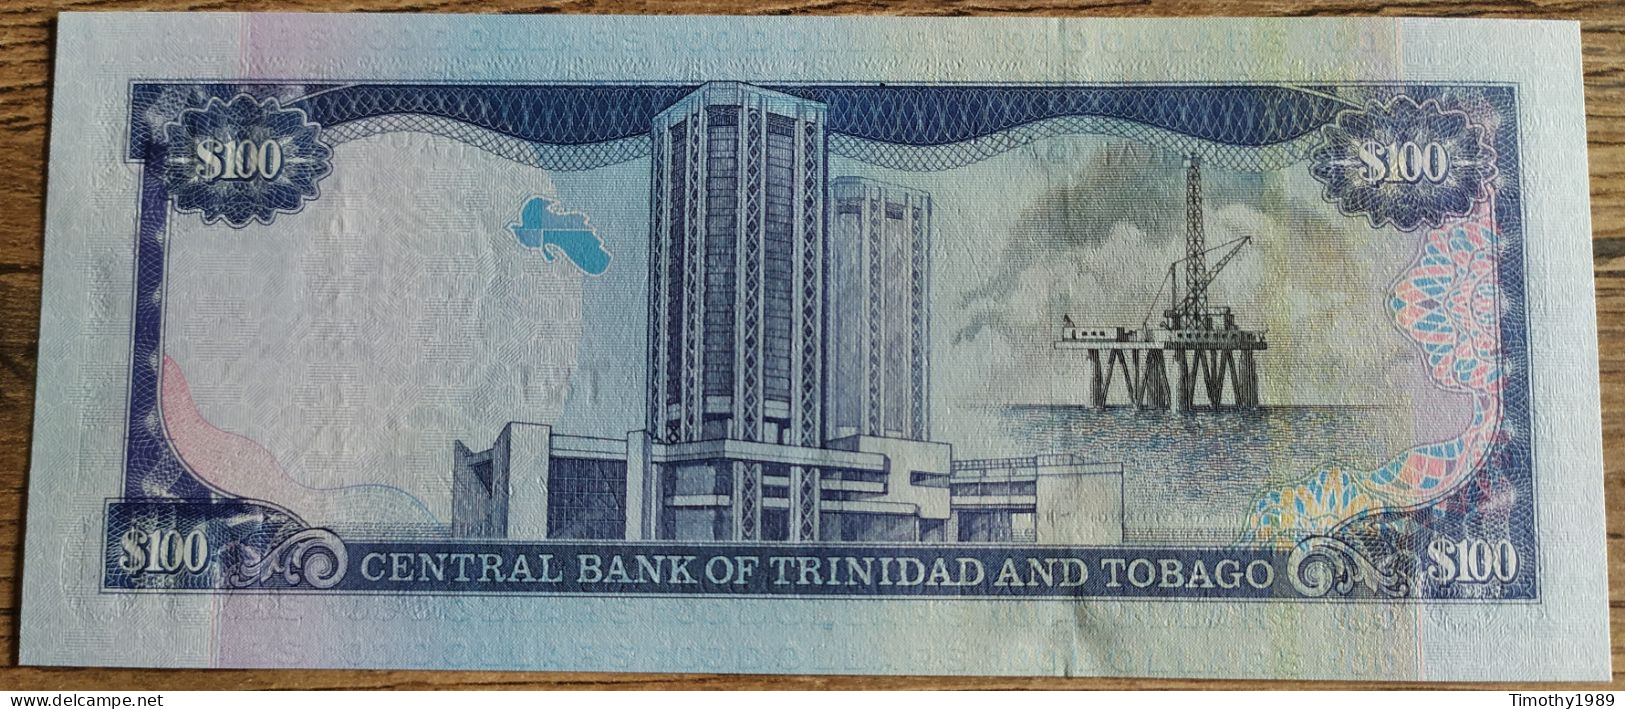 P# 45 - 100 Dollars Trinidad And Tobago 2002 - UNC!! - Trinidad & Tobago